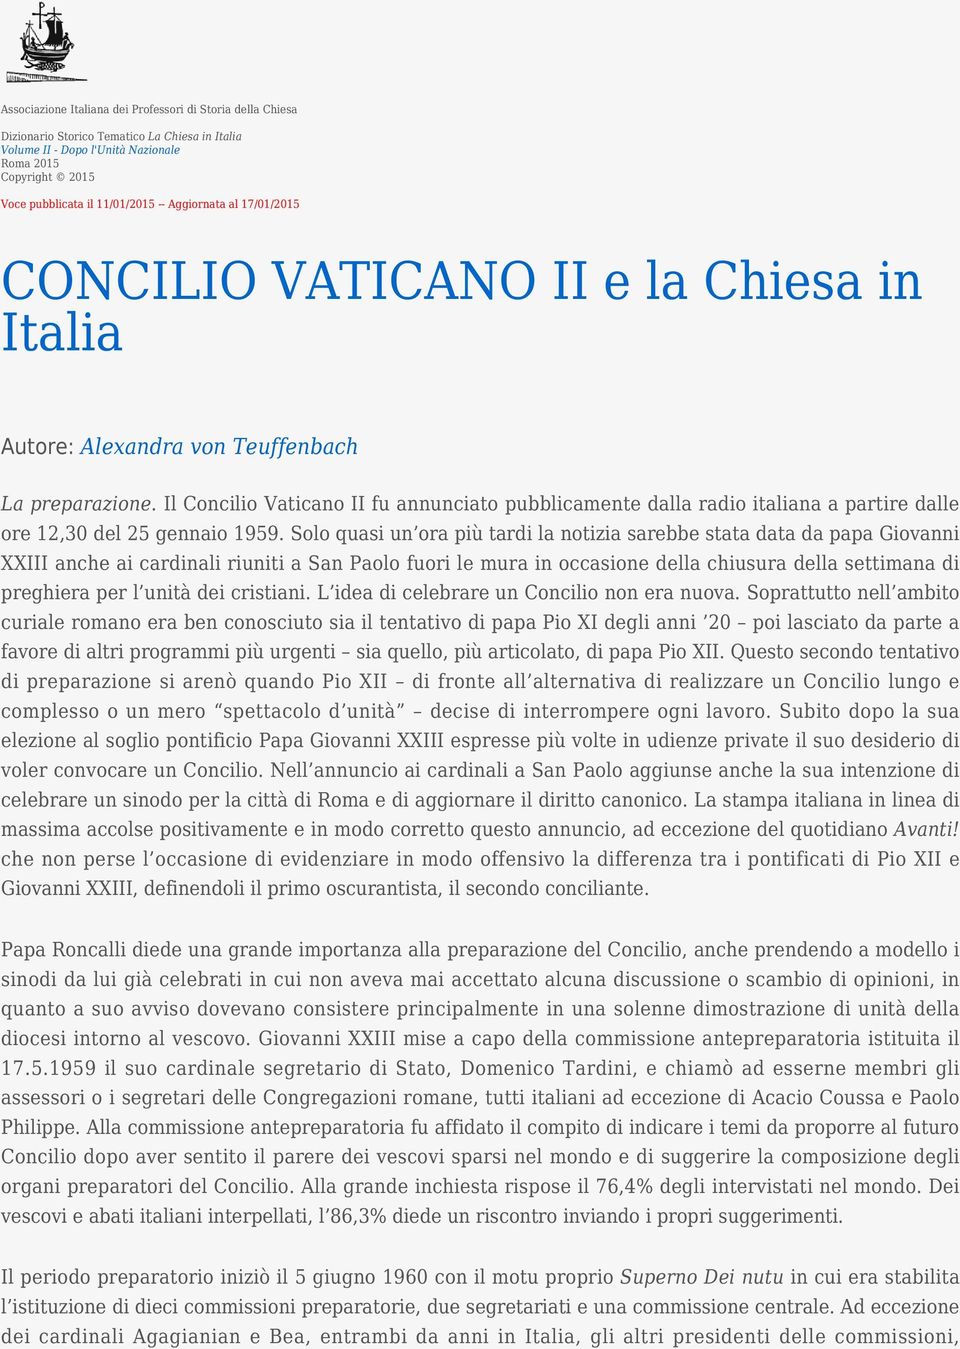 Il Concilio Vaticano II fu annunciato pubblicamente dalla radio italiana a partire dalle ore 12,30 del 25 gennaio 1959.